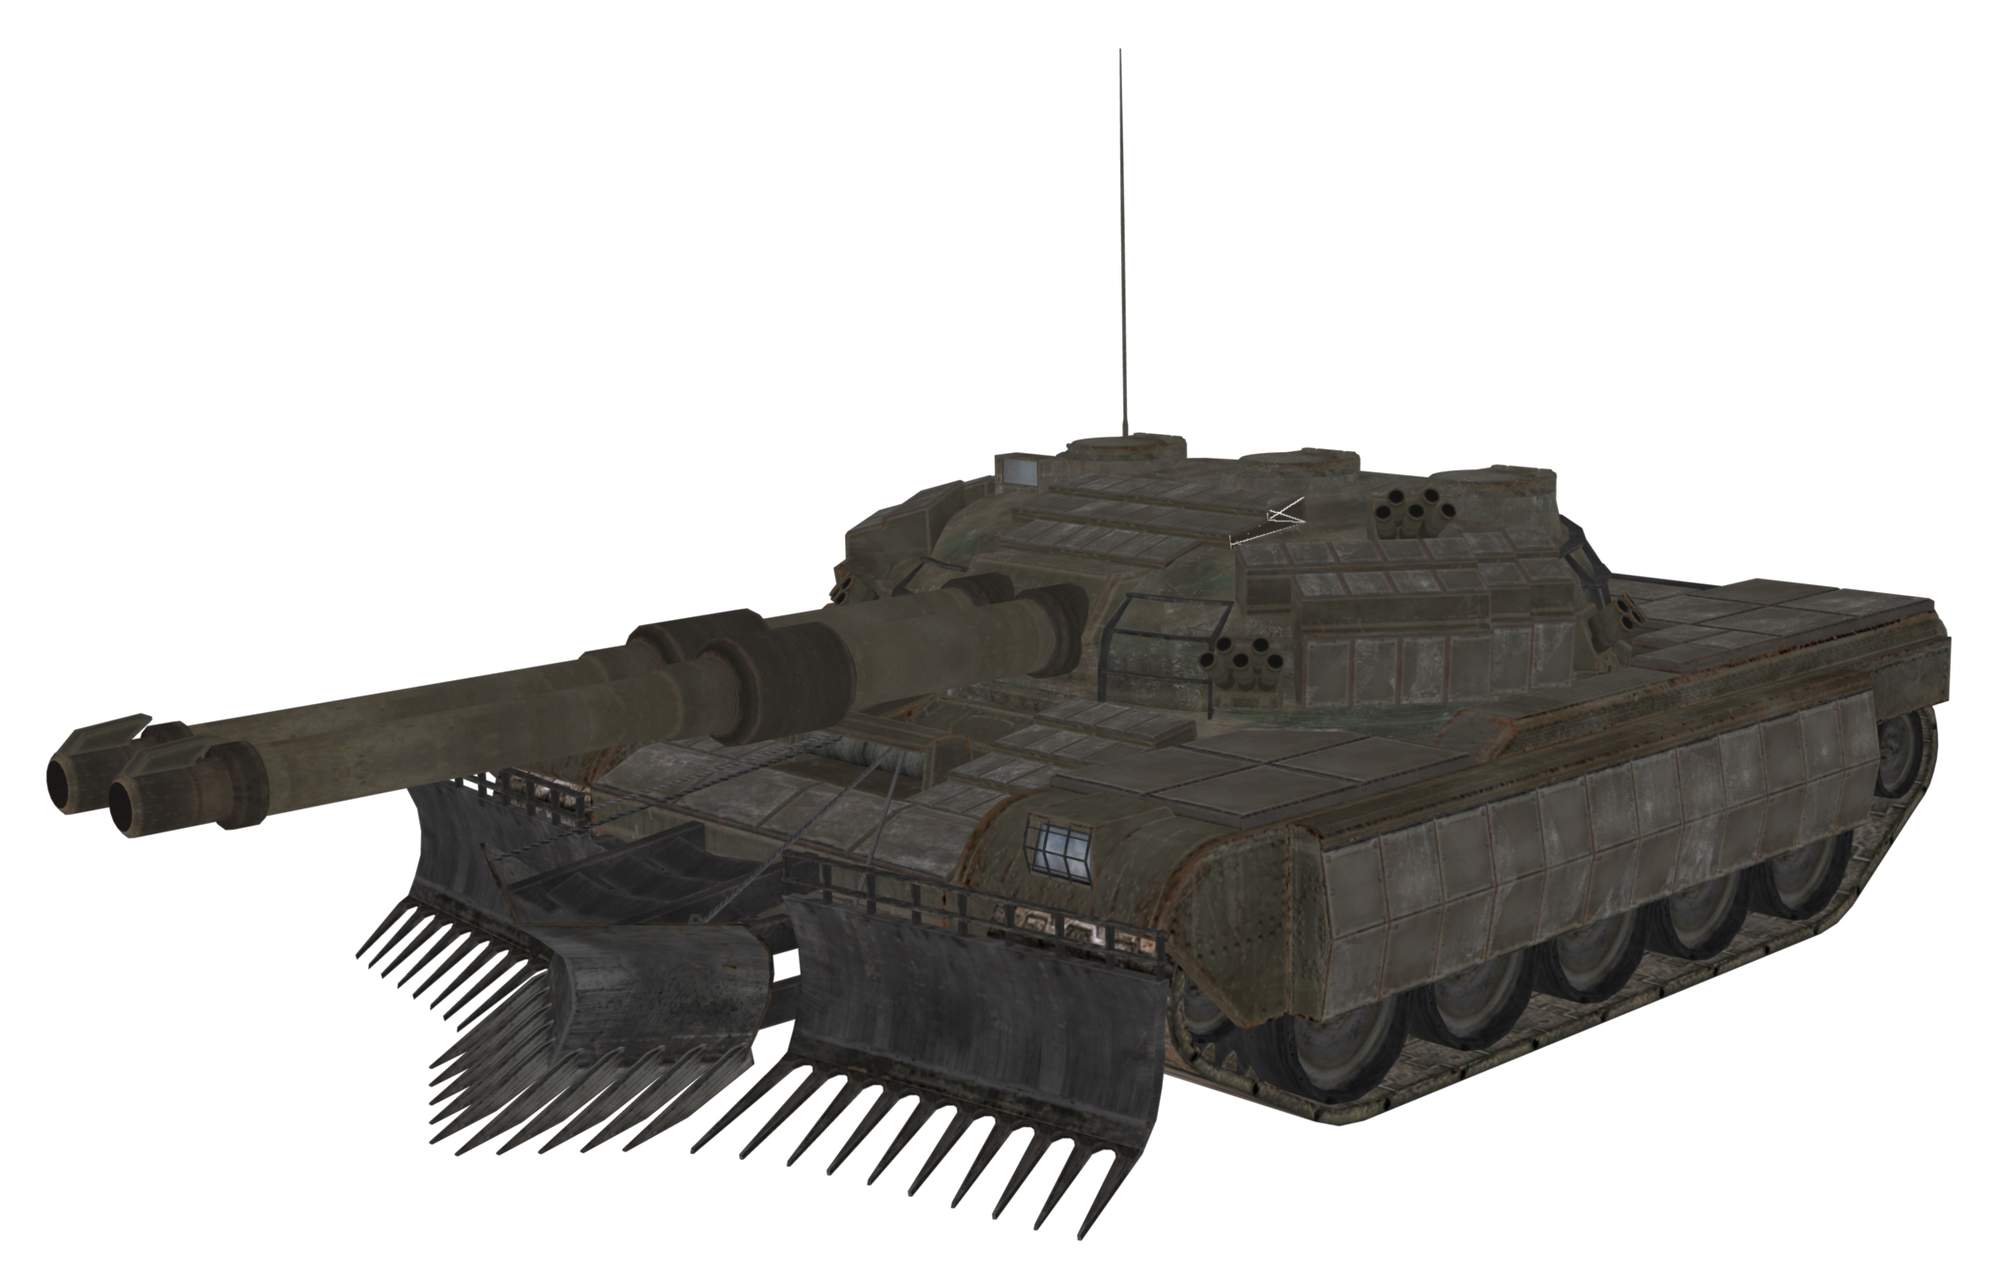 Soviet Prototype Tank | Call of Duty Wiki | Fandom powered by Wikia